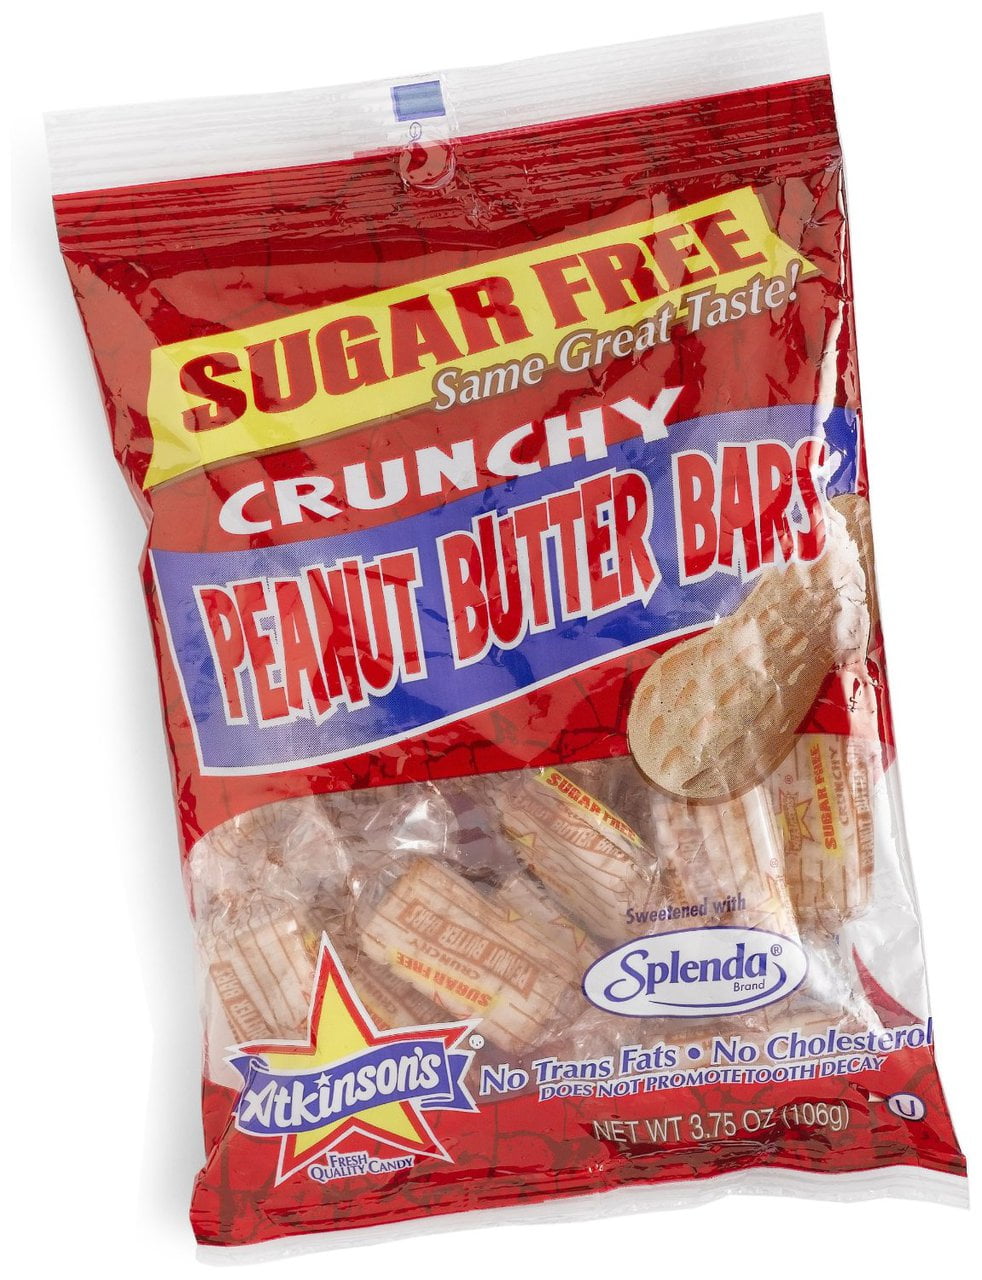 Peanut Butter Bars Peanut Butter Bar Candy Peg Bag 12/3 Oz.